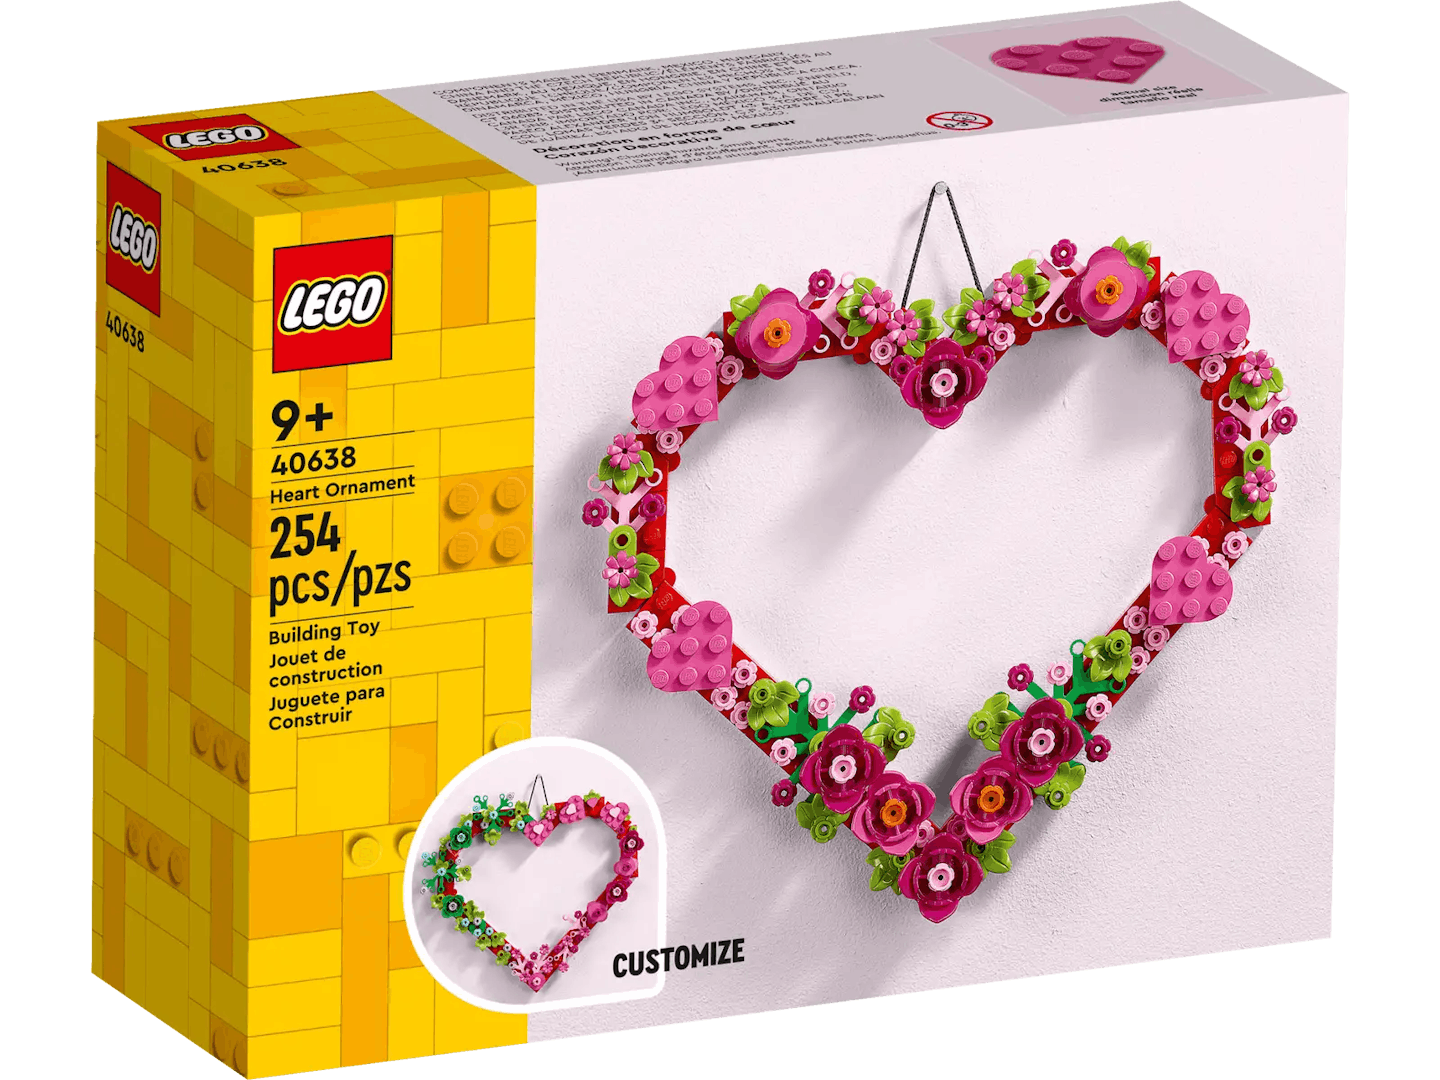 LEGO Heart Ornament box